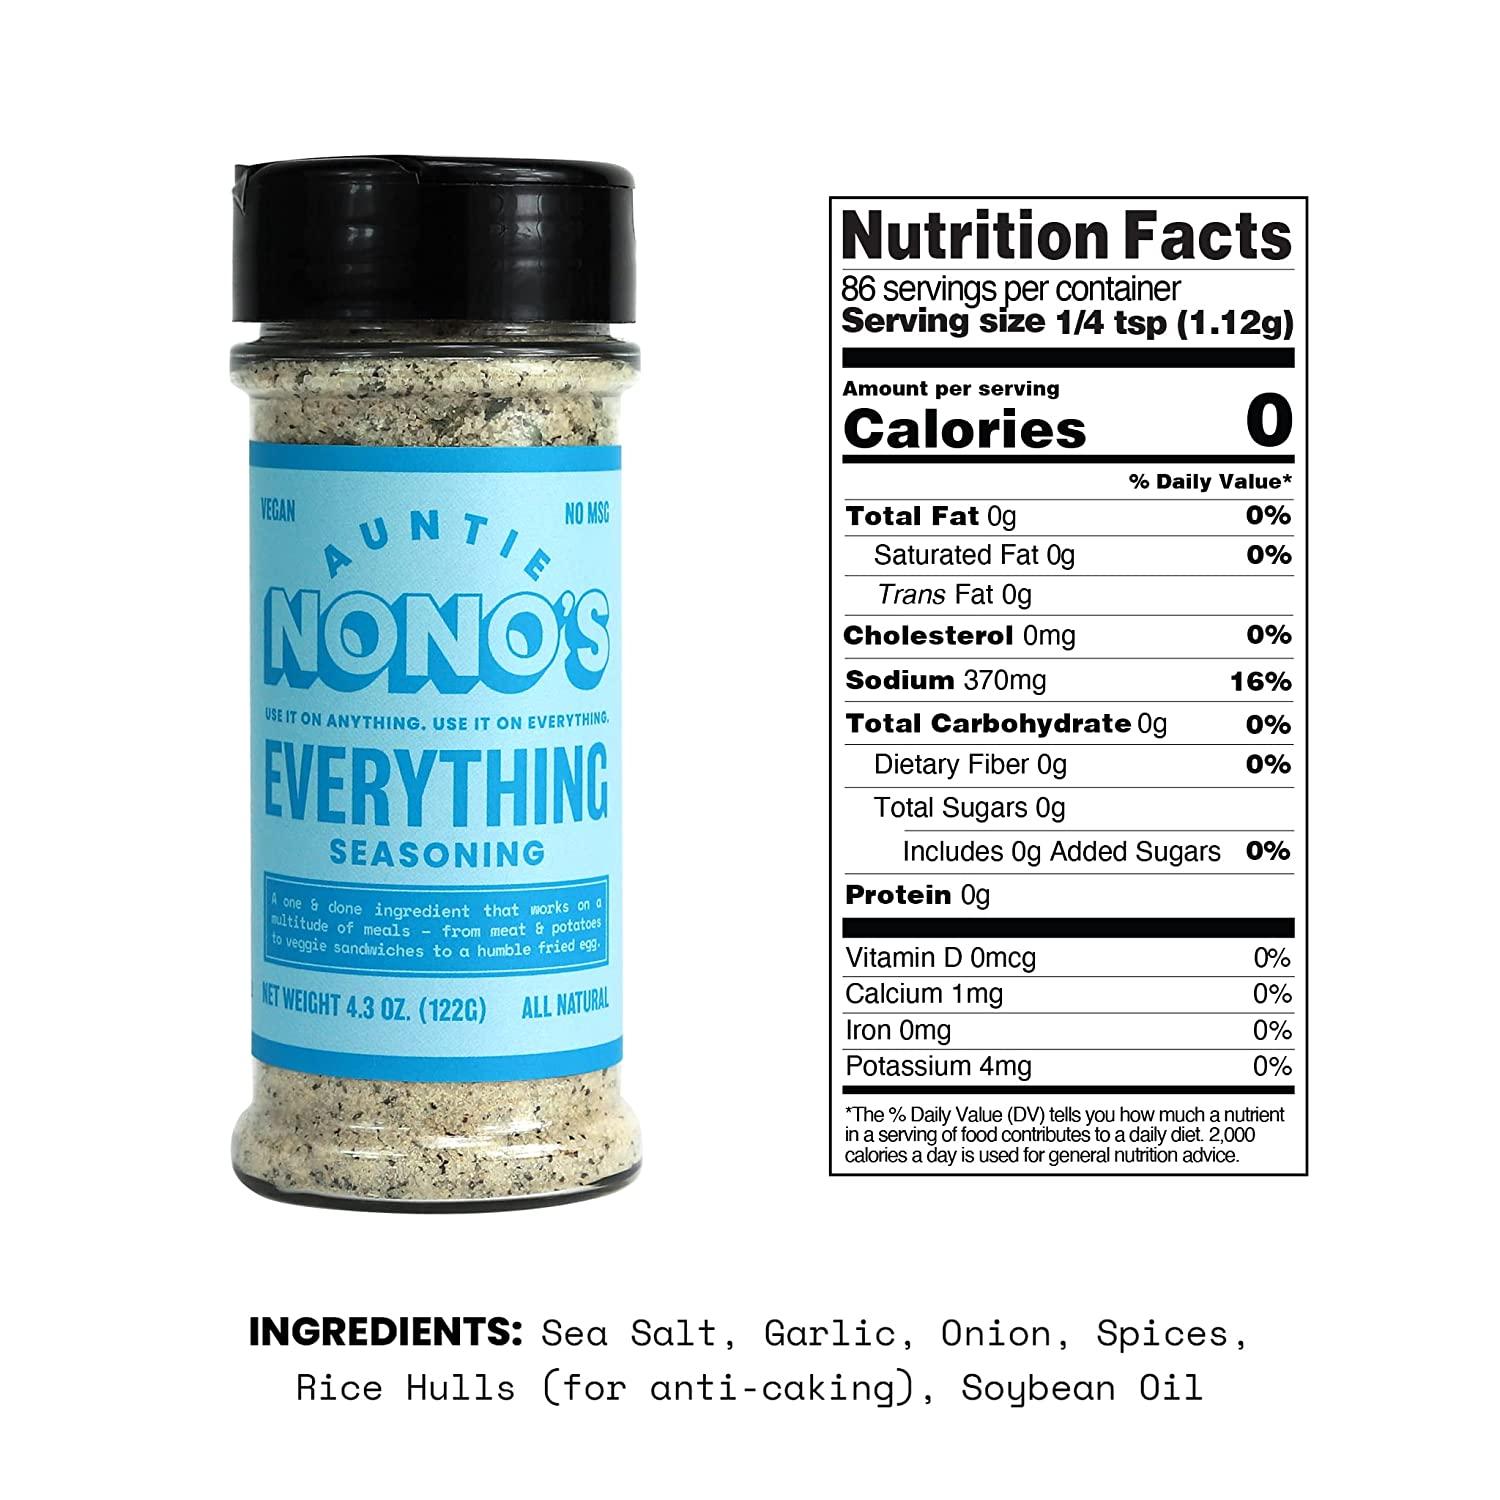 Auntie Nono's Everything Seasoning - Sea Salt, Garlic, & Onion Powder - Add  Flavor to Chicken, Pork Chops, Eggs & Veggies - Paleo, Vegan, & Gluten-Free  Friendly 4.3 Ounce (Pack of 1)